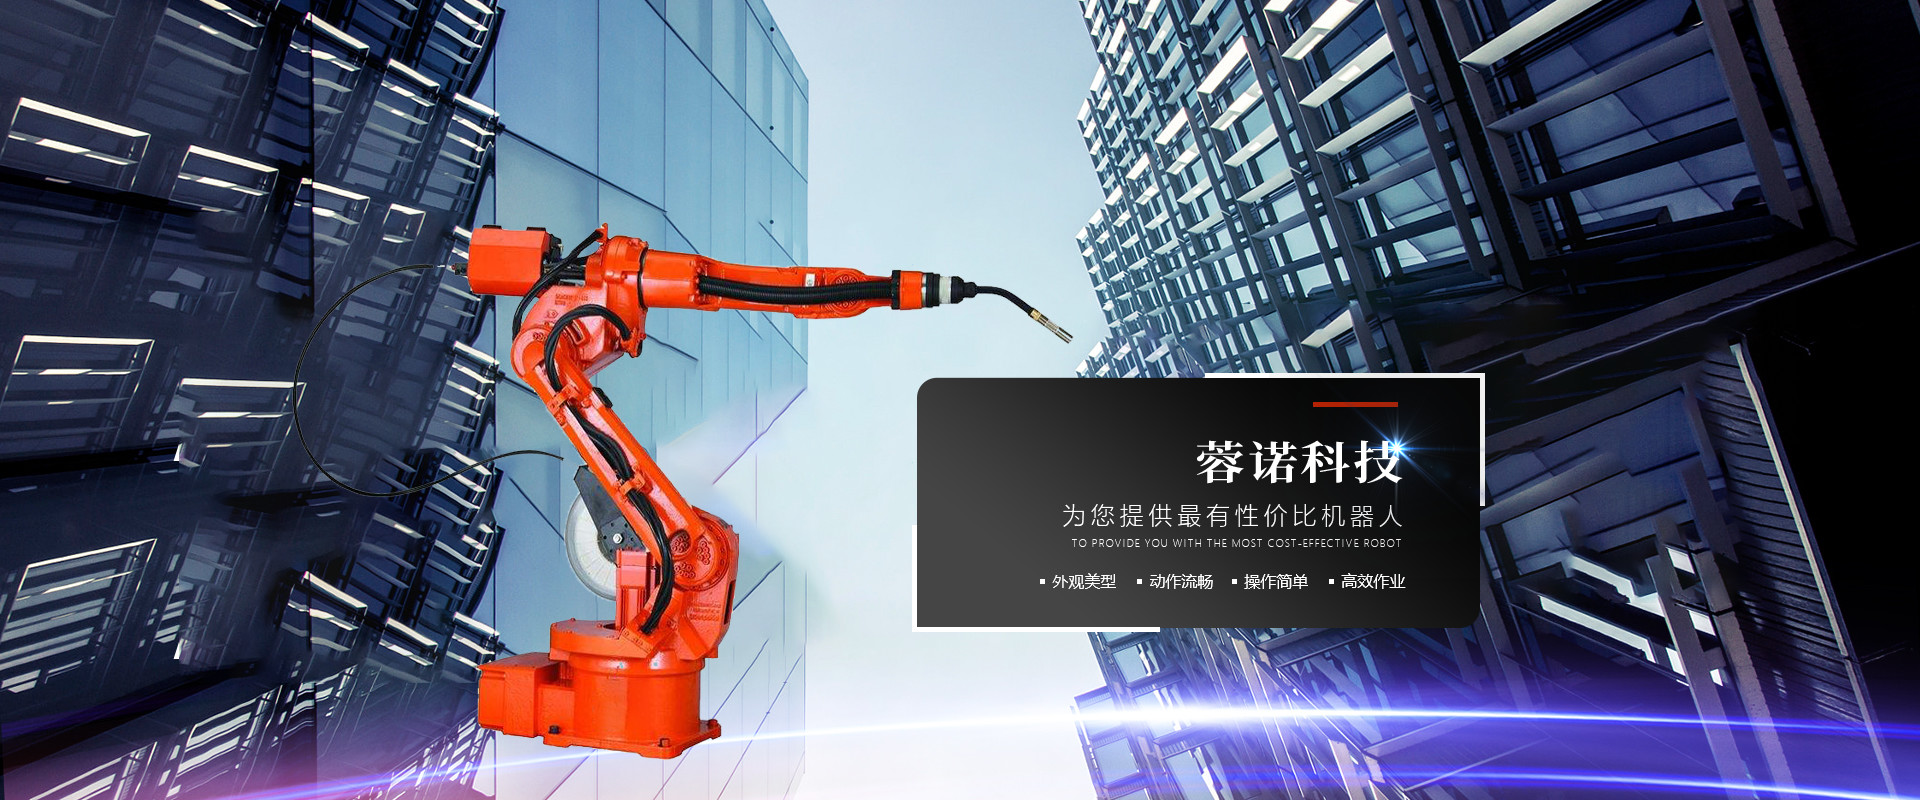 现代化机器人生产商-四川蓉诺科技有限公司